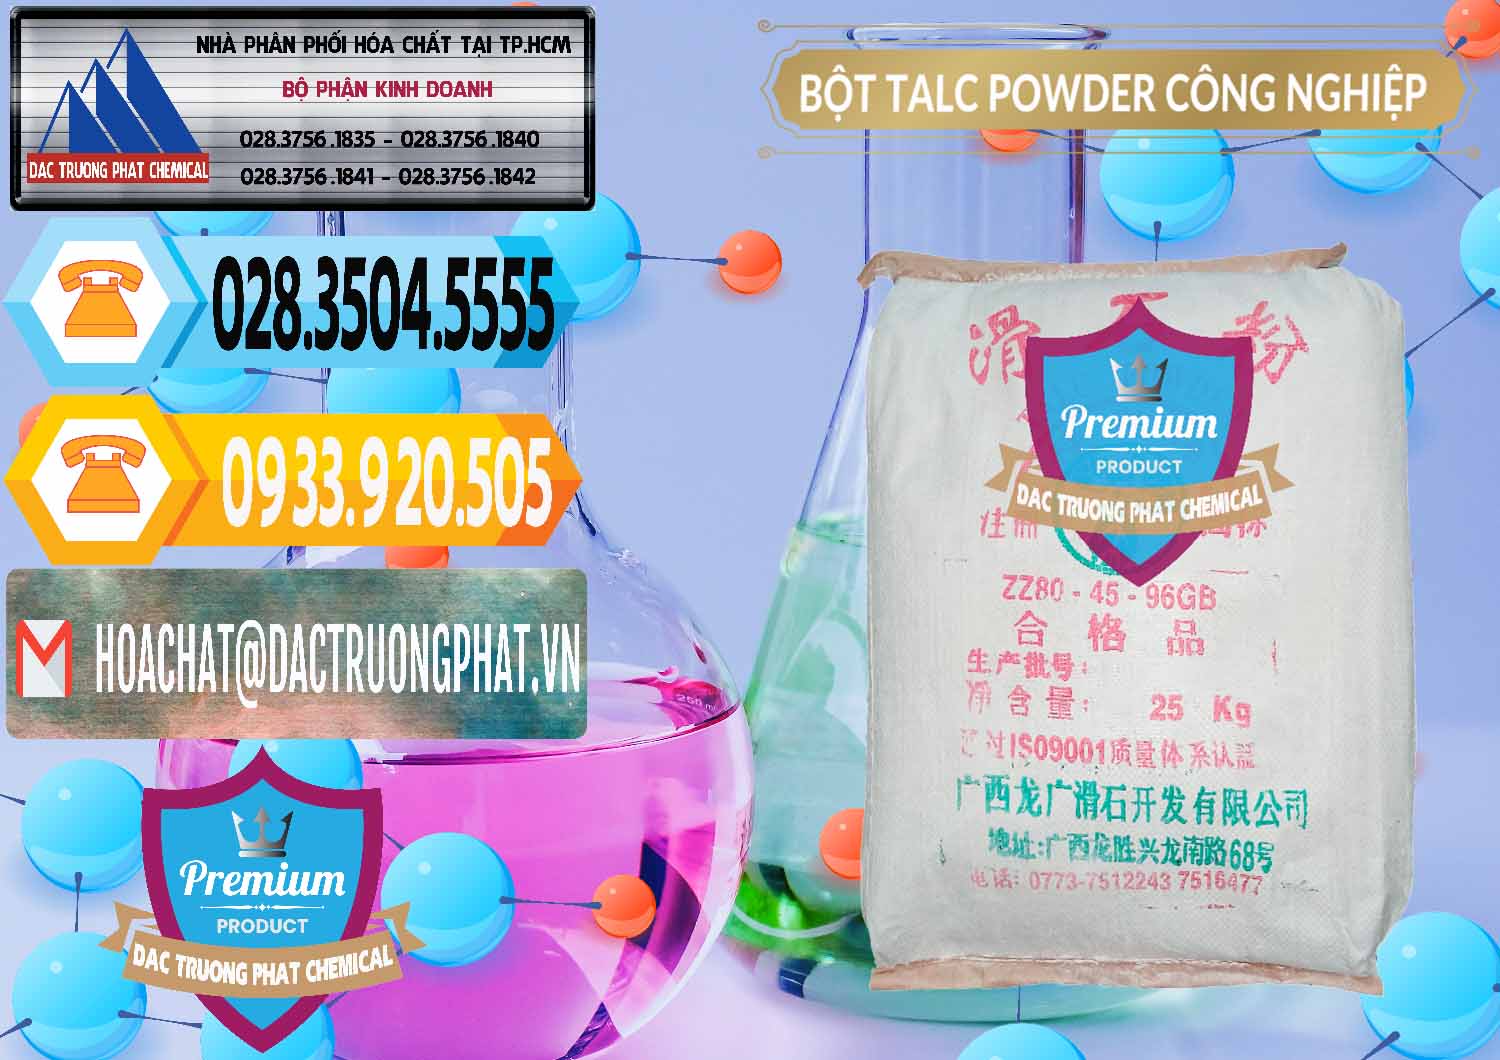 Nhà cung ứng & bán Bột Talc Powder Công Nghiệp Trung Quốc China - 0037 - Nơi bán ( cung cấp ) hóa chất tại TP.HCM - hoachattayrua.net